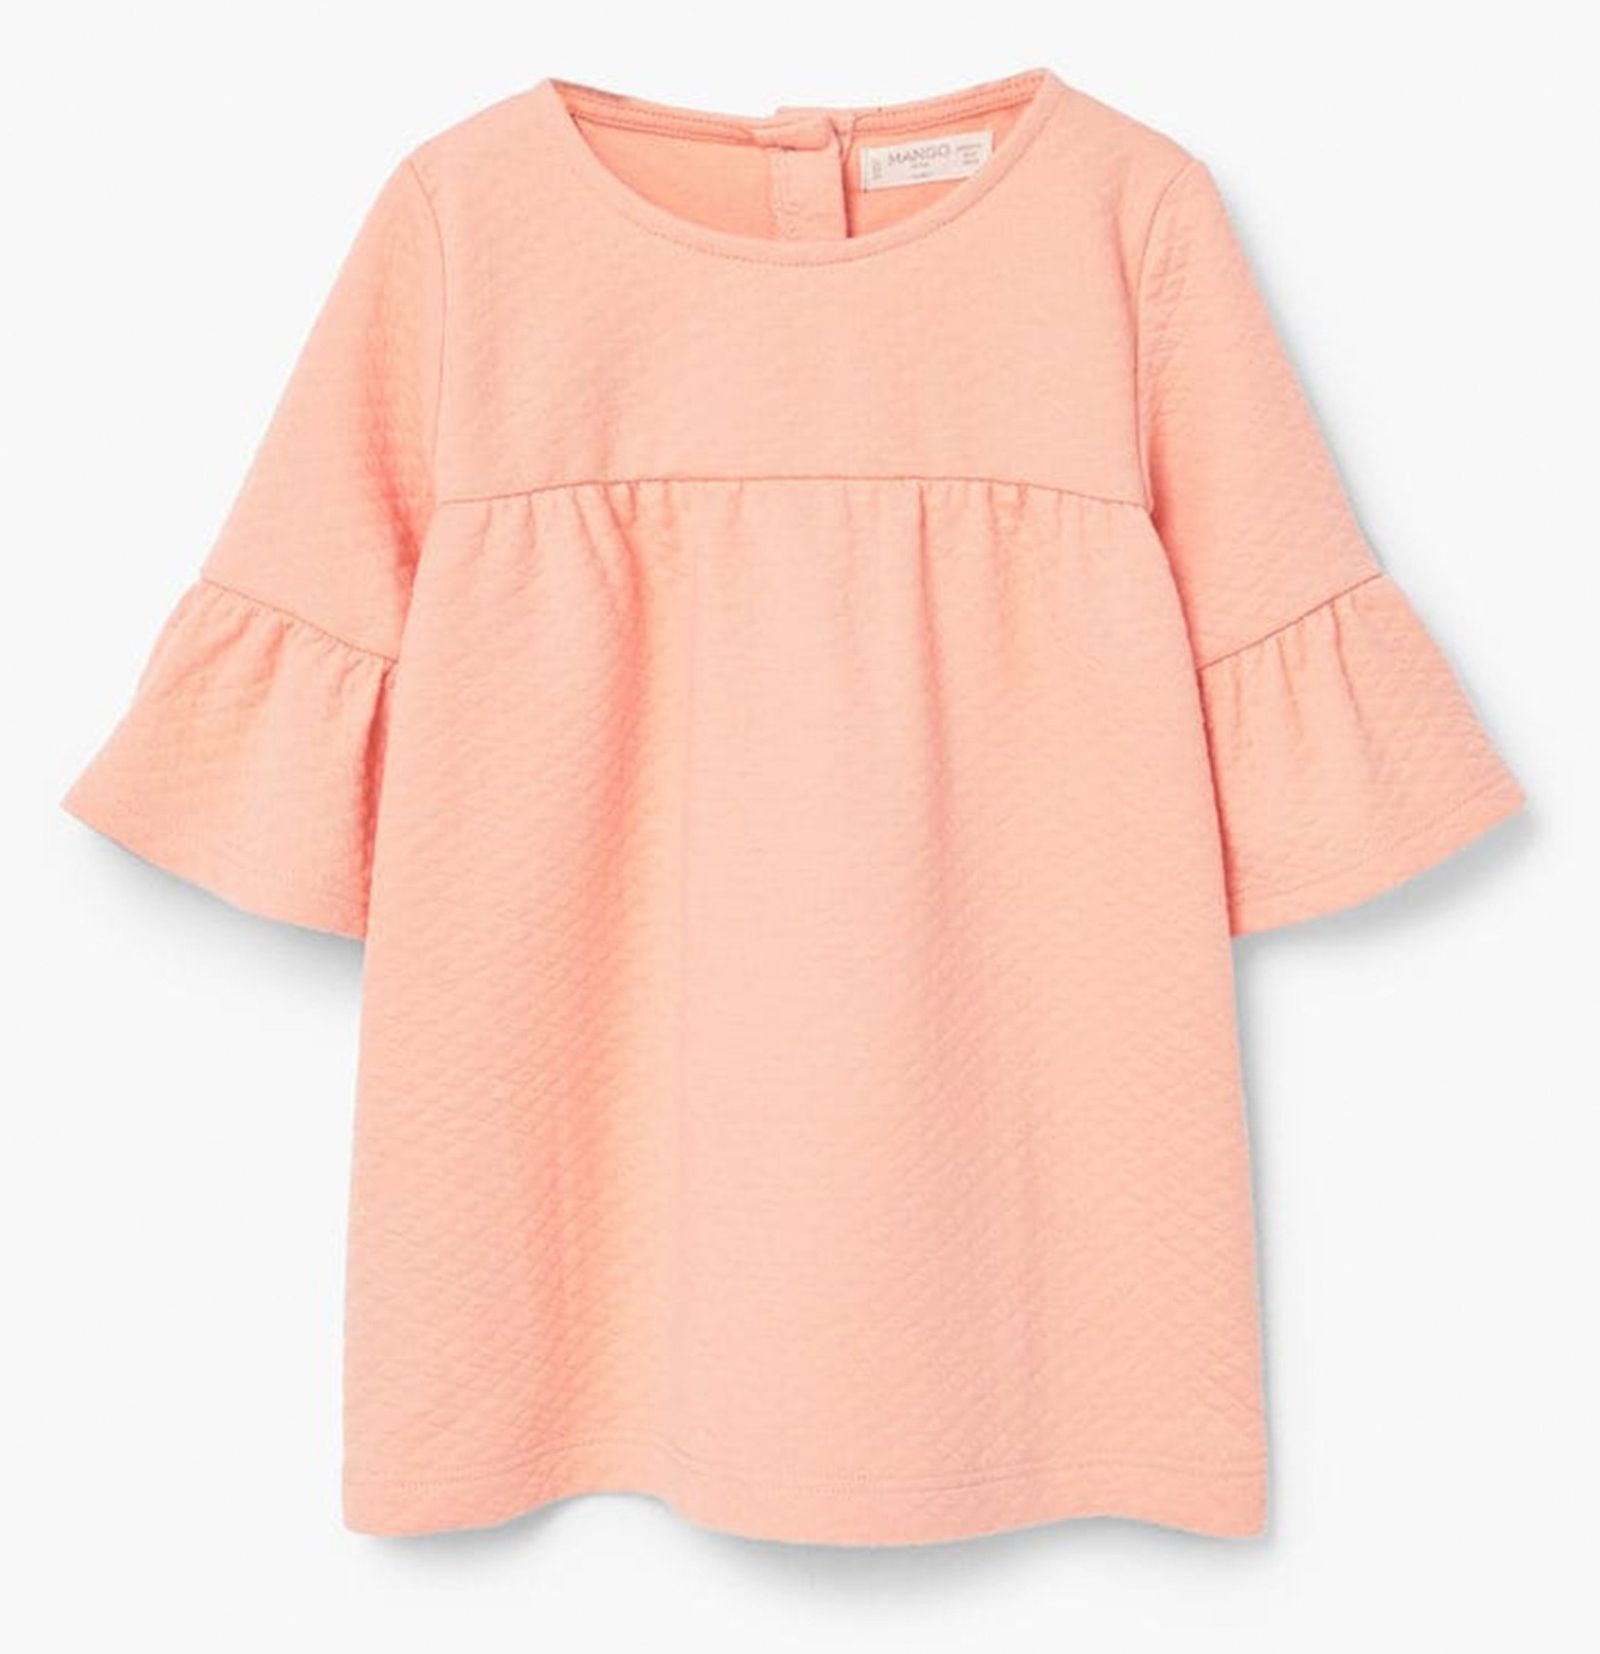 پیراهن ساده نوزادی دخترانه - مانگو - نارنجي  - 1